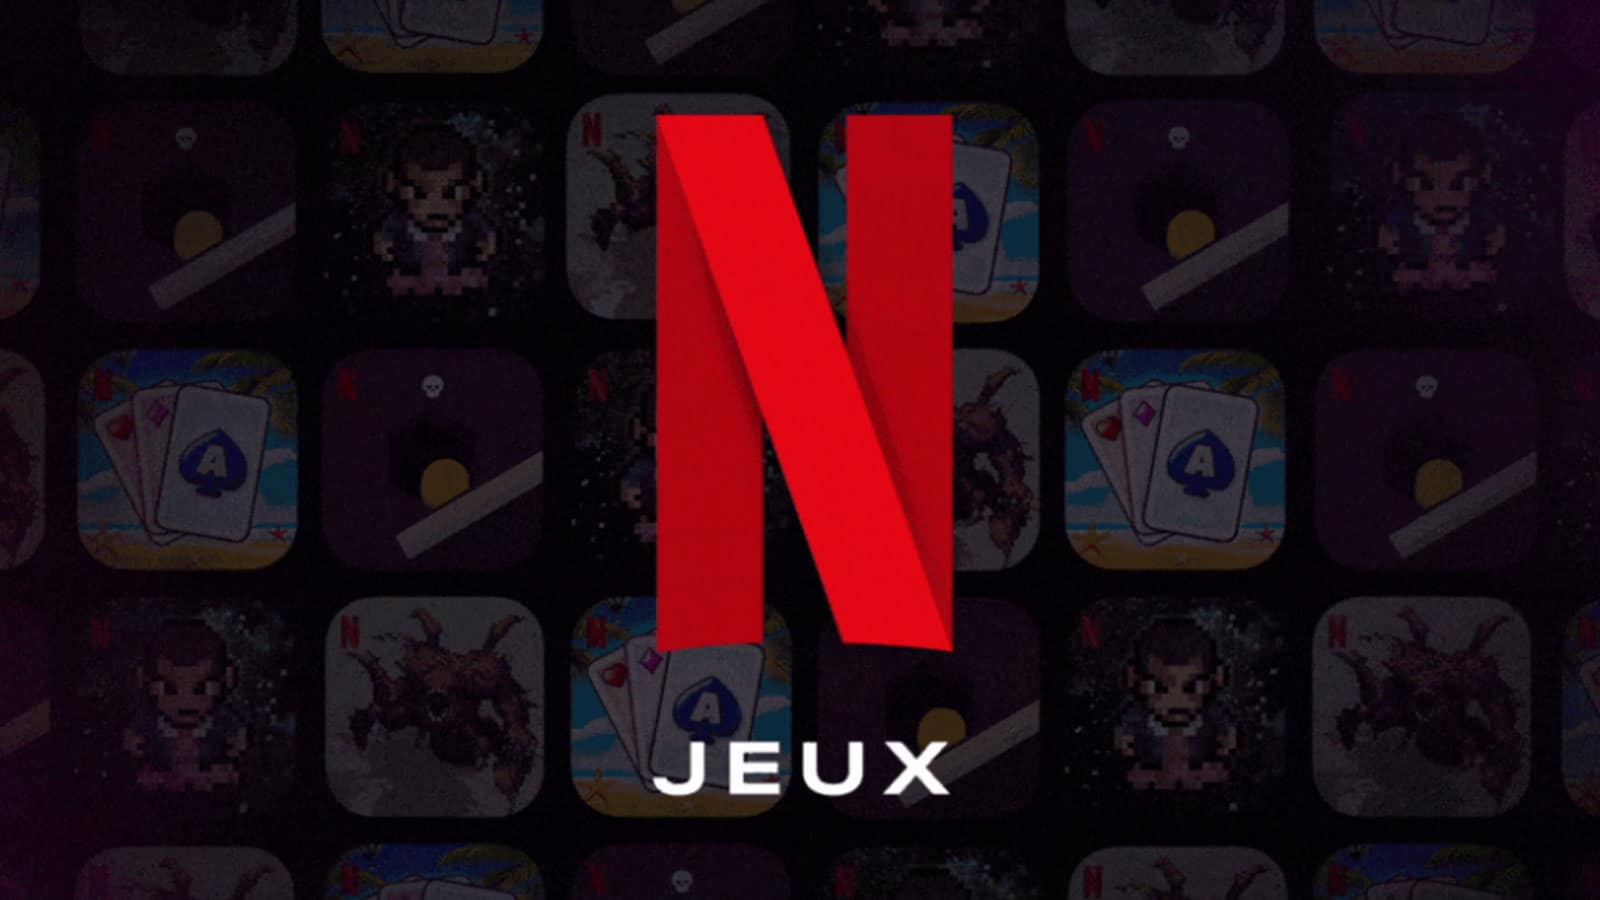 netflix-jouer-jeux-gratuit-smartphone-android